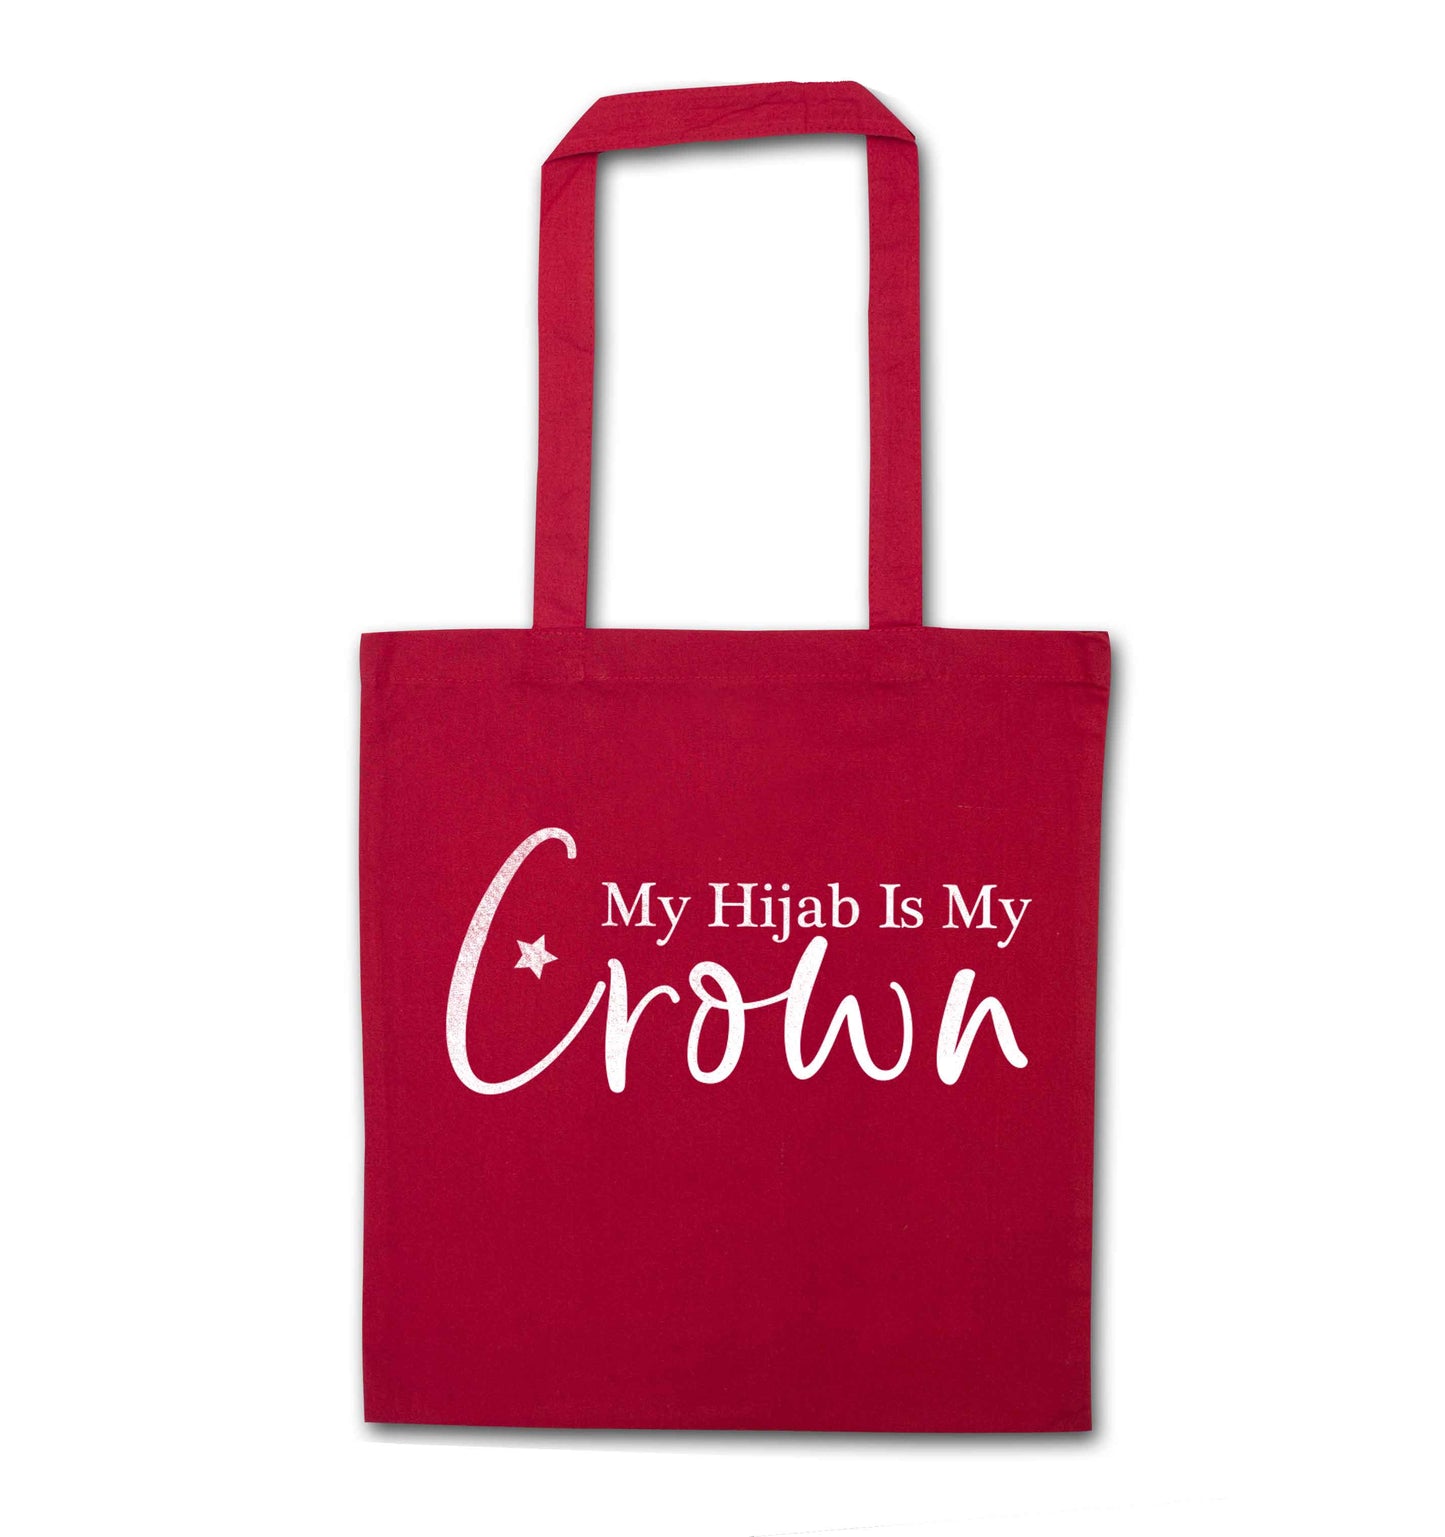 My hijab is my crown red tote bag